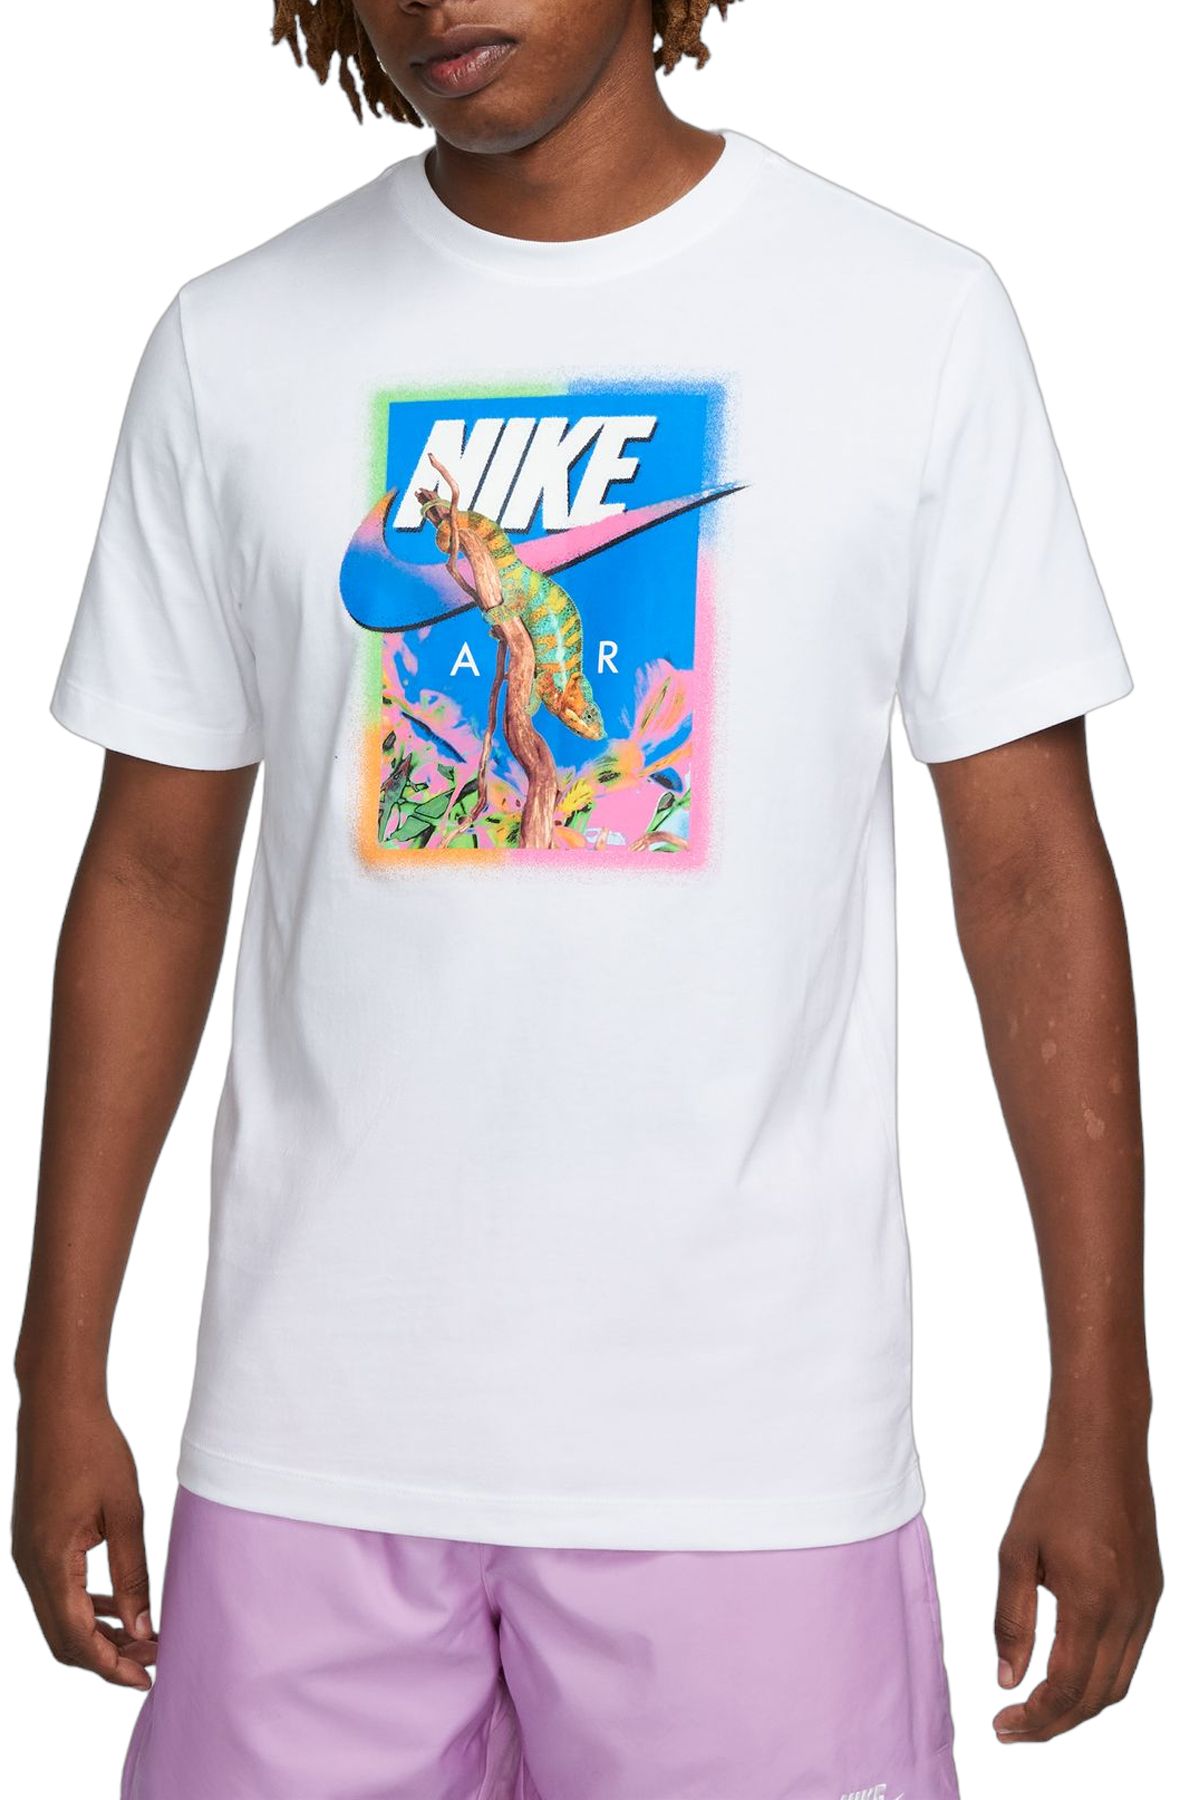 Nike U.S. T-Shirt